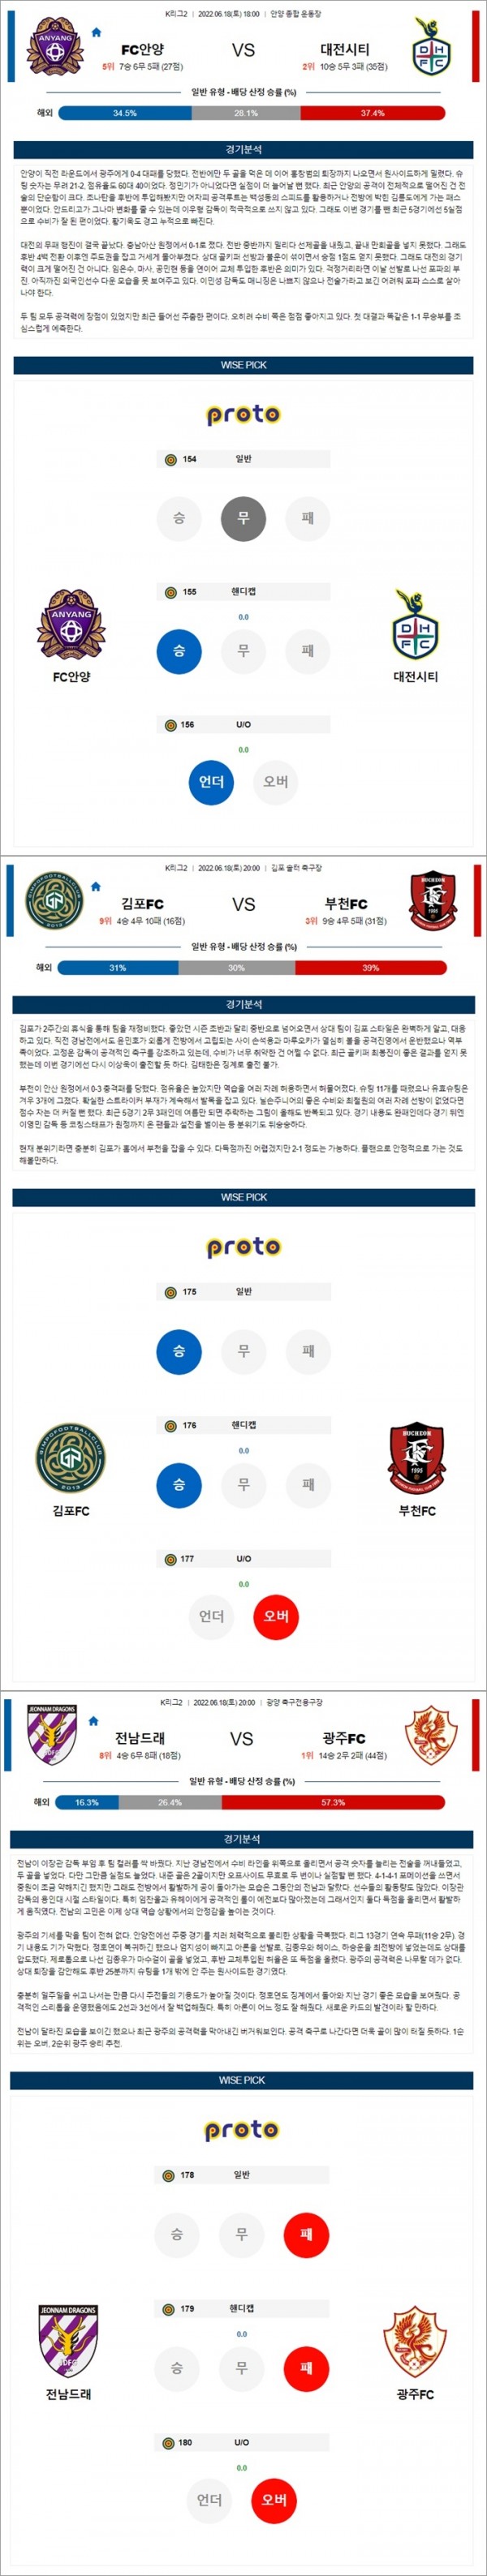 6월18일 K리그 2부 리그 3경기 통합 분석.jpg